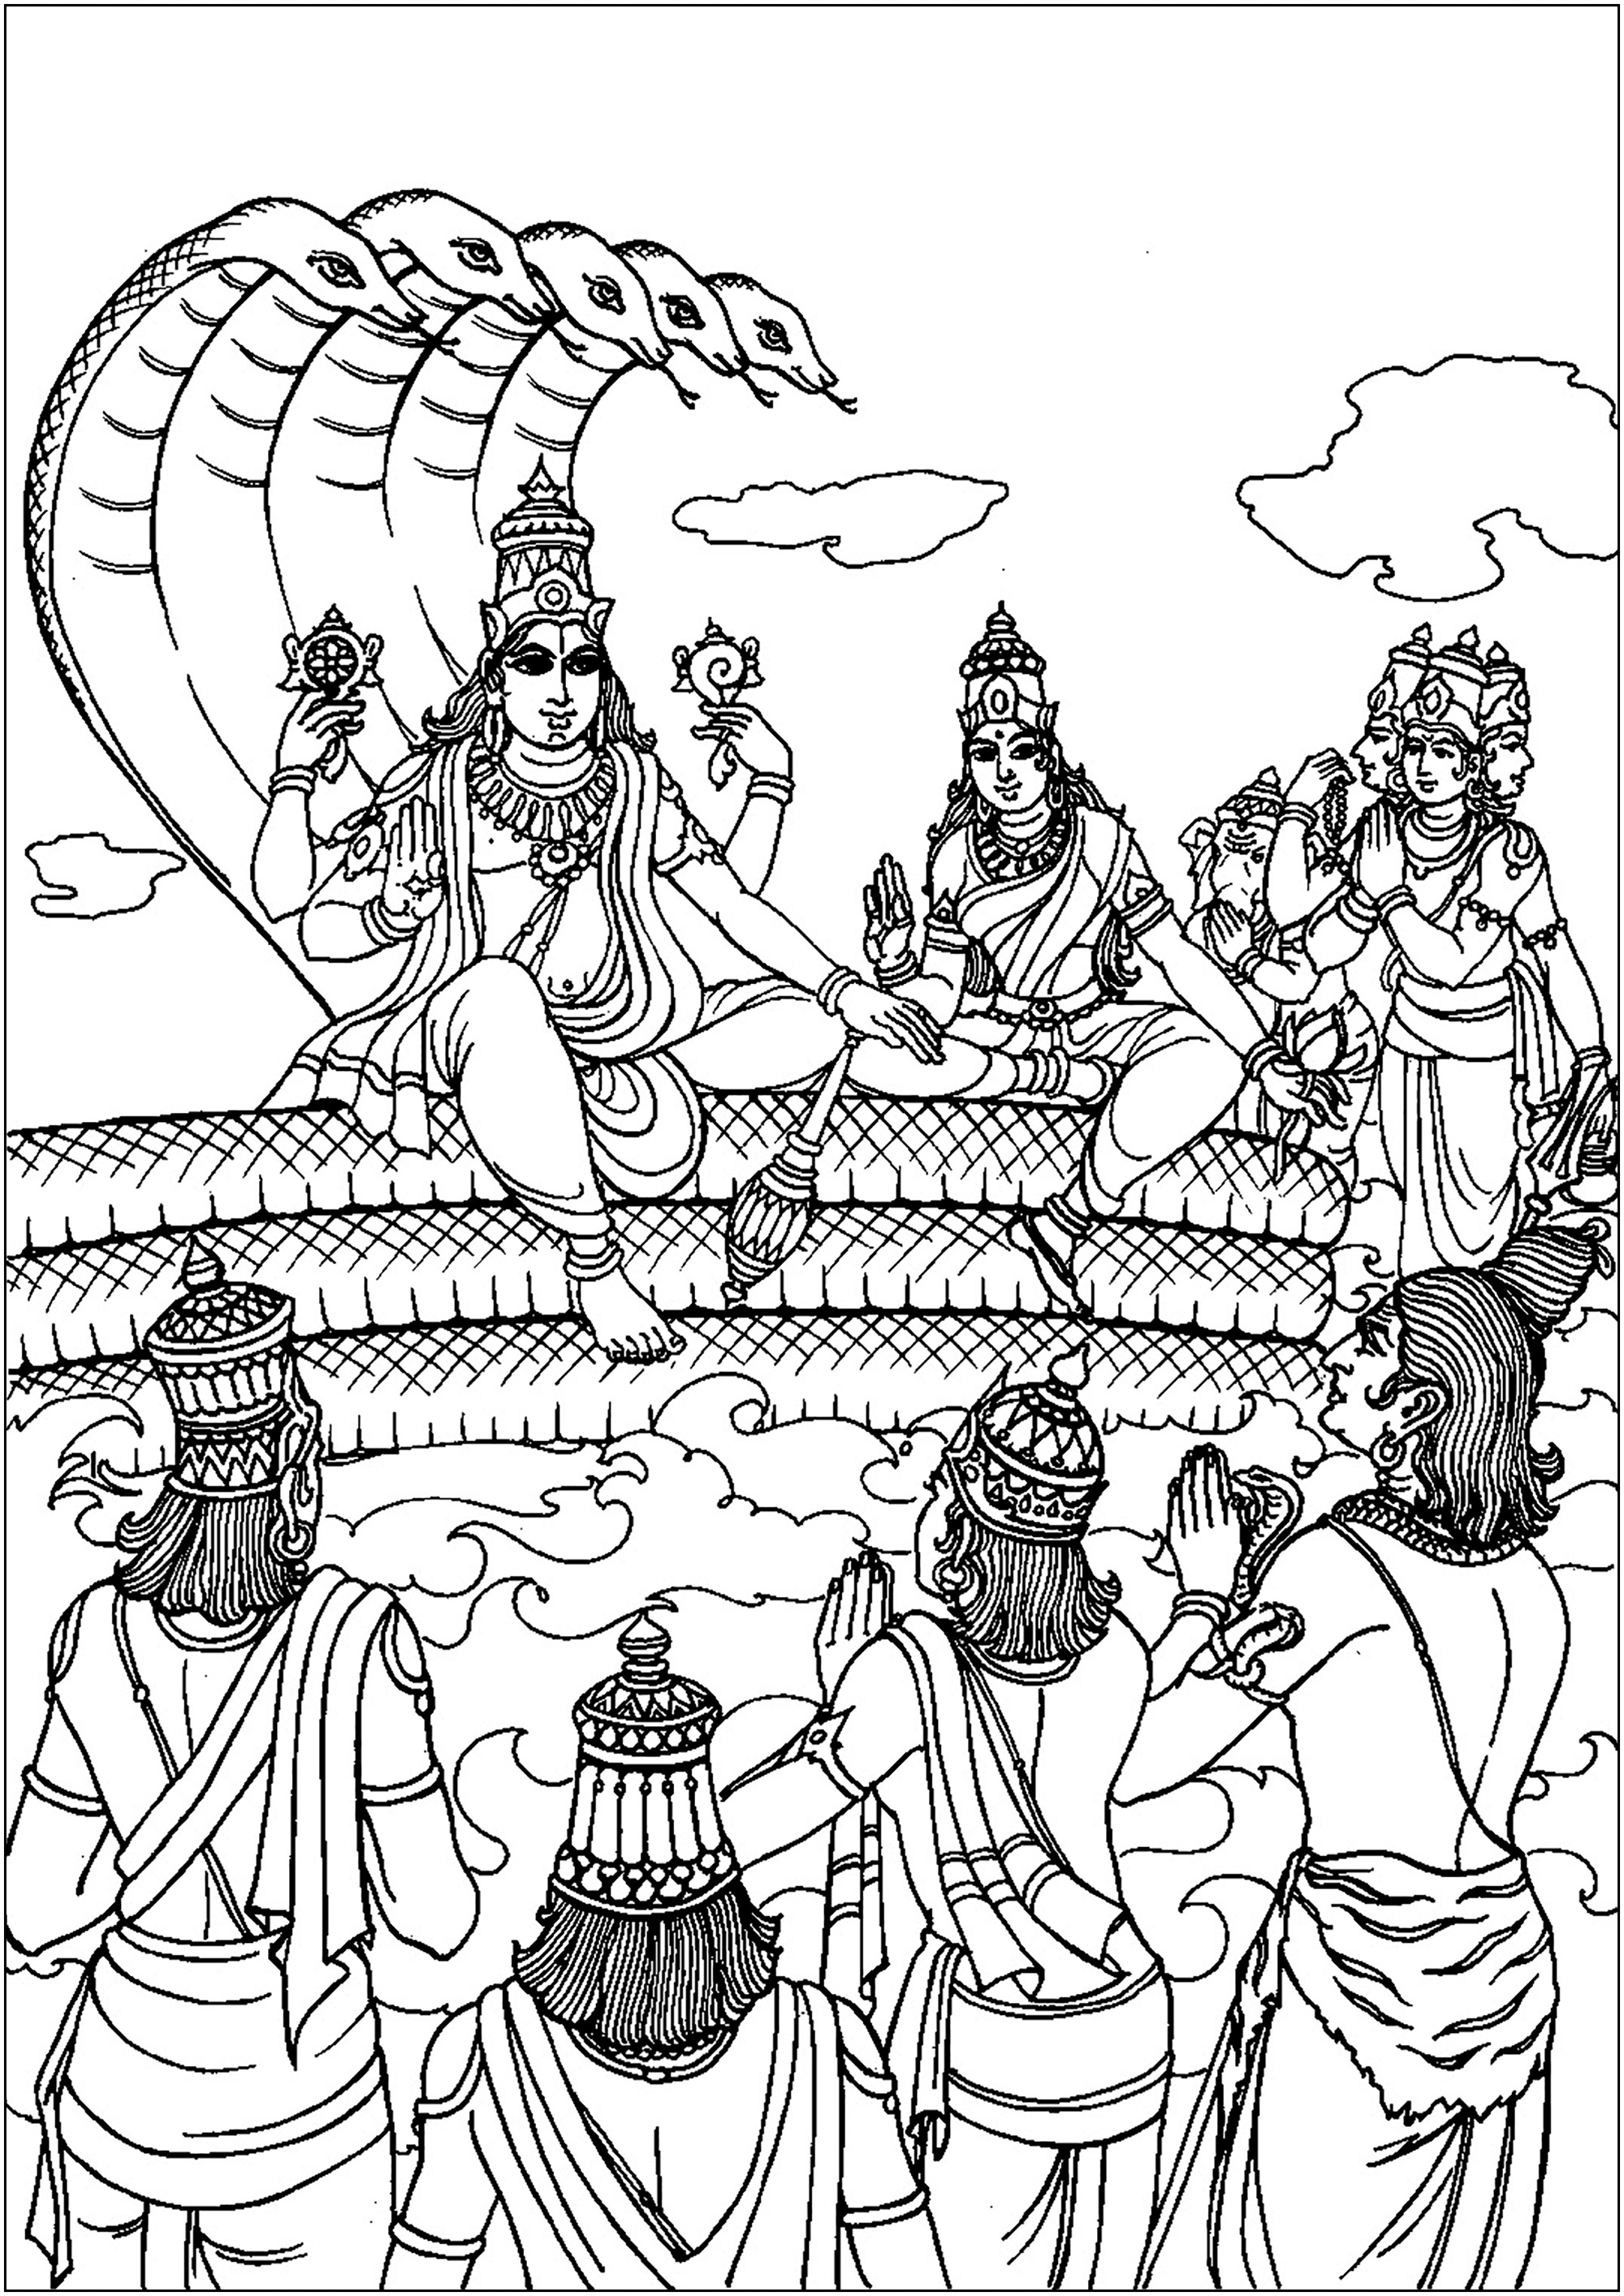 Vishnu who takes human form : Rama, to visit men. Vishnu est une divinité majeure dans l'hindouisme, considéré comme le préservateur de l'universIl est souvent représenté reposant sur le serpent divin, Ananta Shesha, avec quatre bras tenant des symboles sacrés. Vishnu incarne la bienveillance et intervient périodiquement dans le monde sous différentes avatars (incarnations) pour rétablir l'ordre cosmique et protéger la vertu.